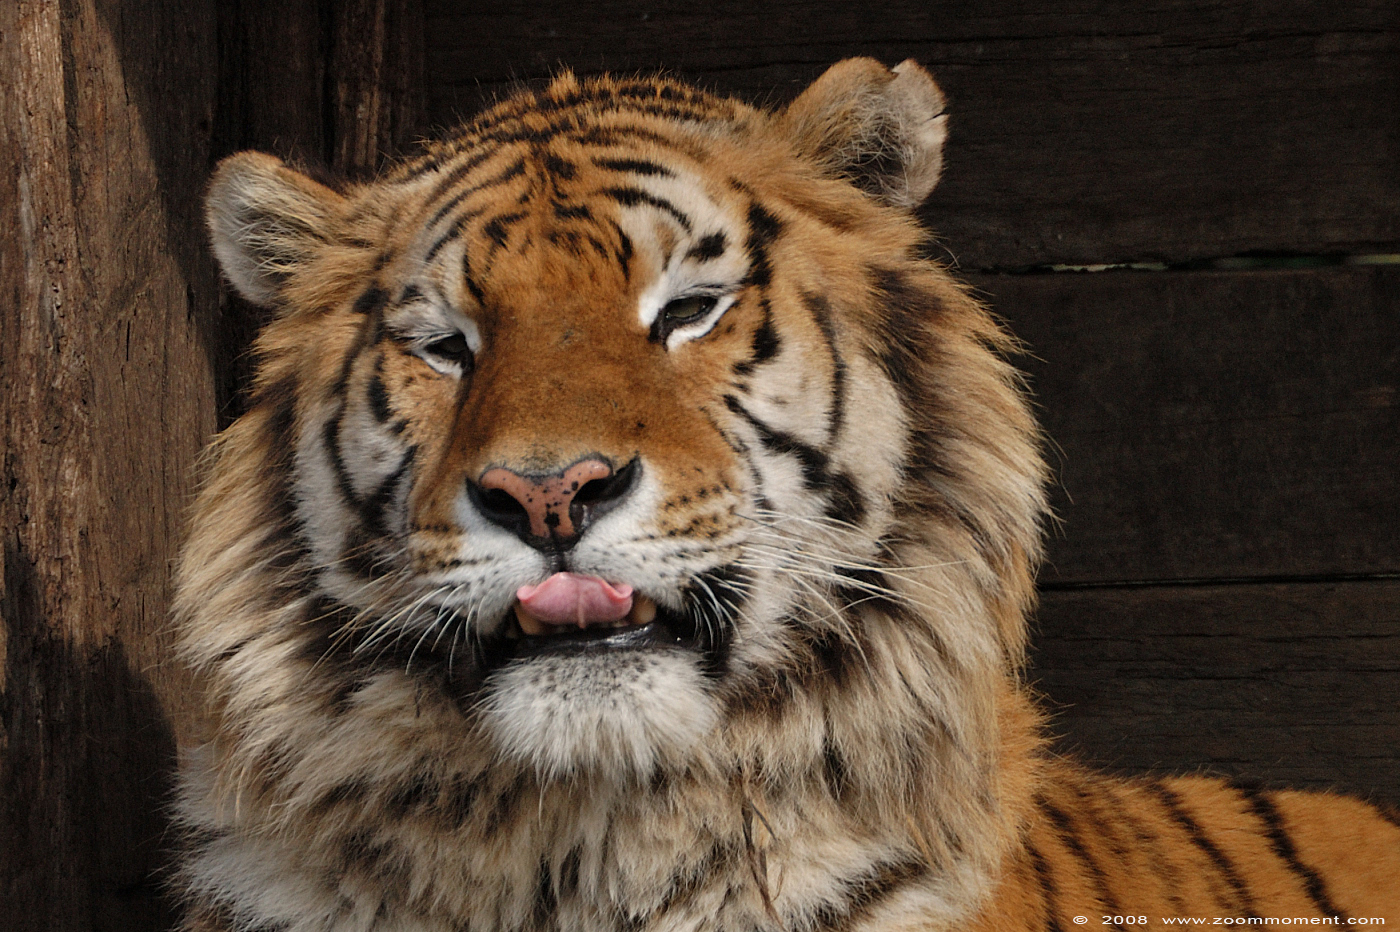 Siberische tijger ( Panthera tigris altaica ) Siberian tiger
Trefwoorden: Olmen zoo Belgie Belgium Siberische tijger Panthera tigris altaica Siberian tiger